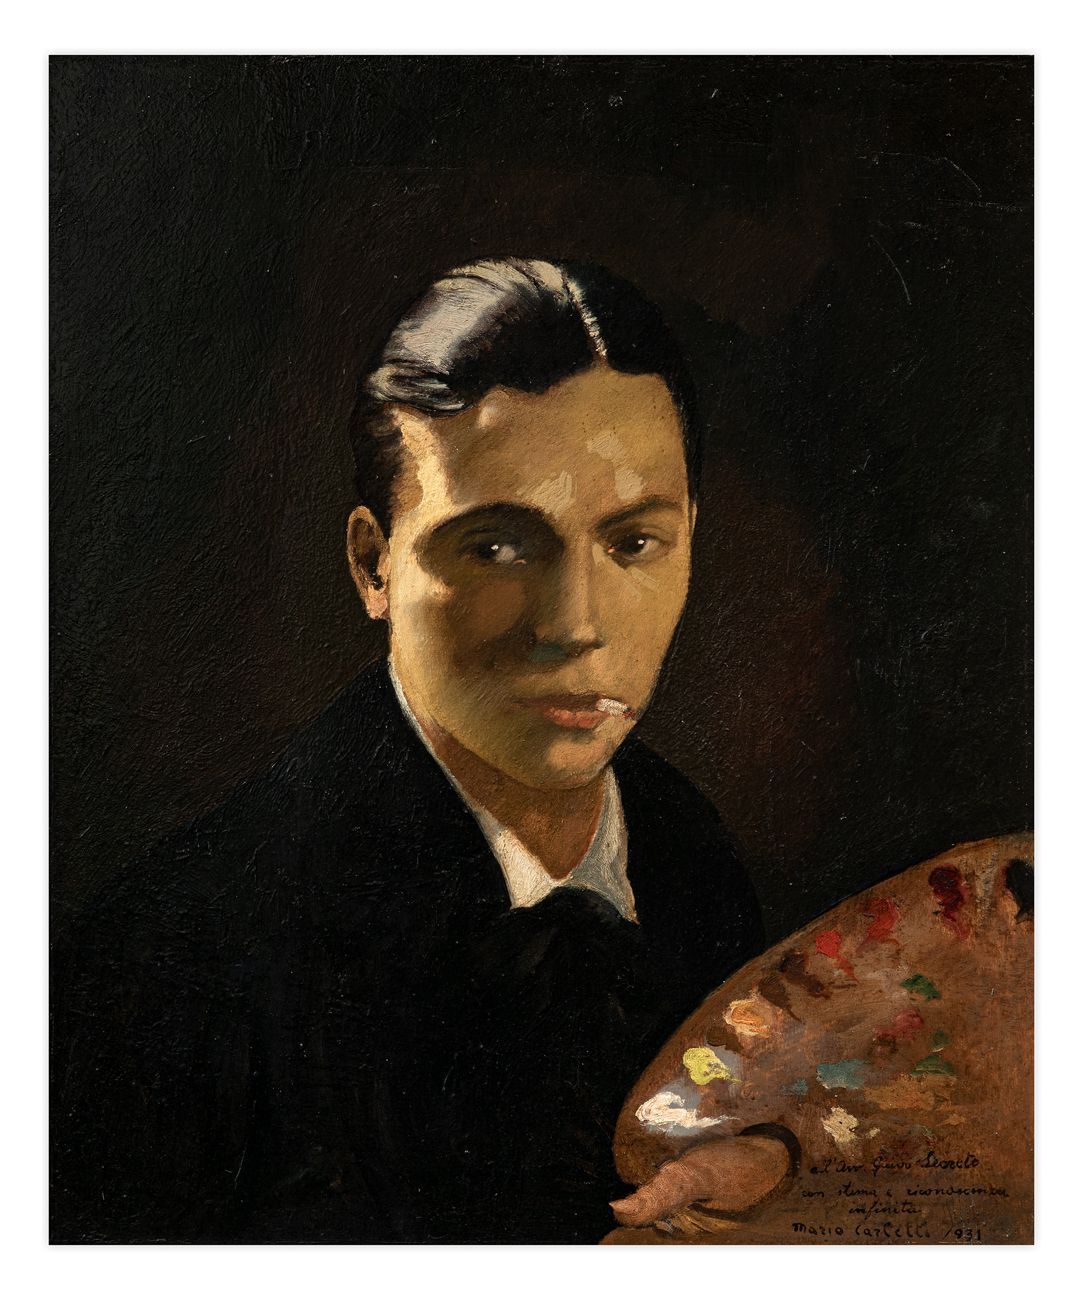 MARIO CARLETTI (1912-1977) - Senza Titolo (Autoritratto), 1931 Óleo sobre tabla
&hellip;